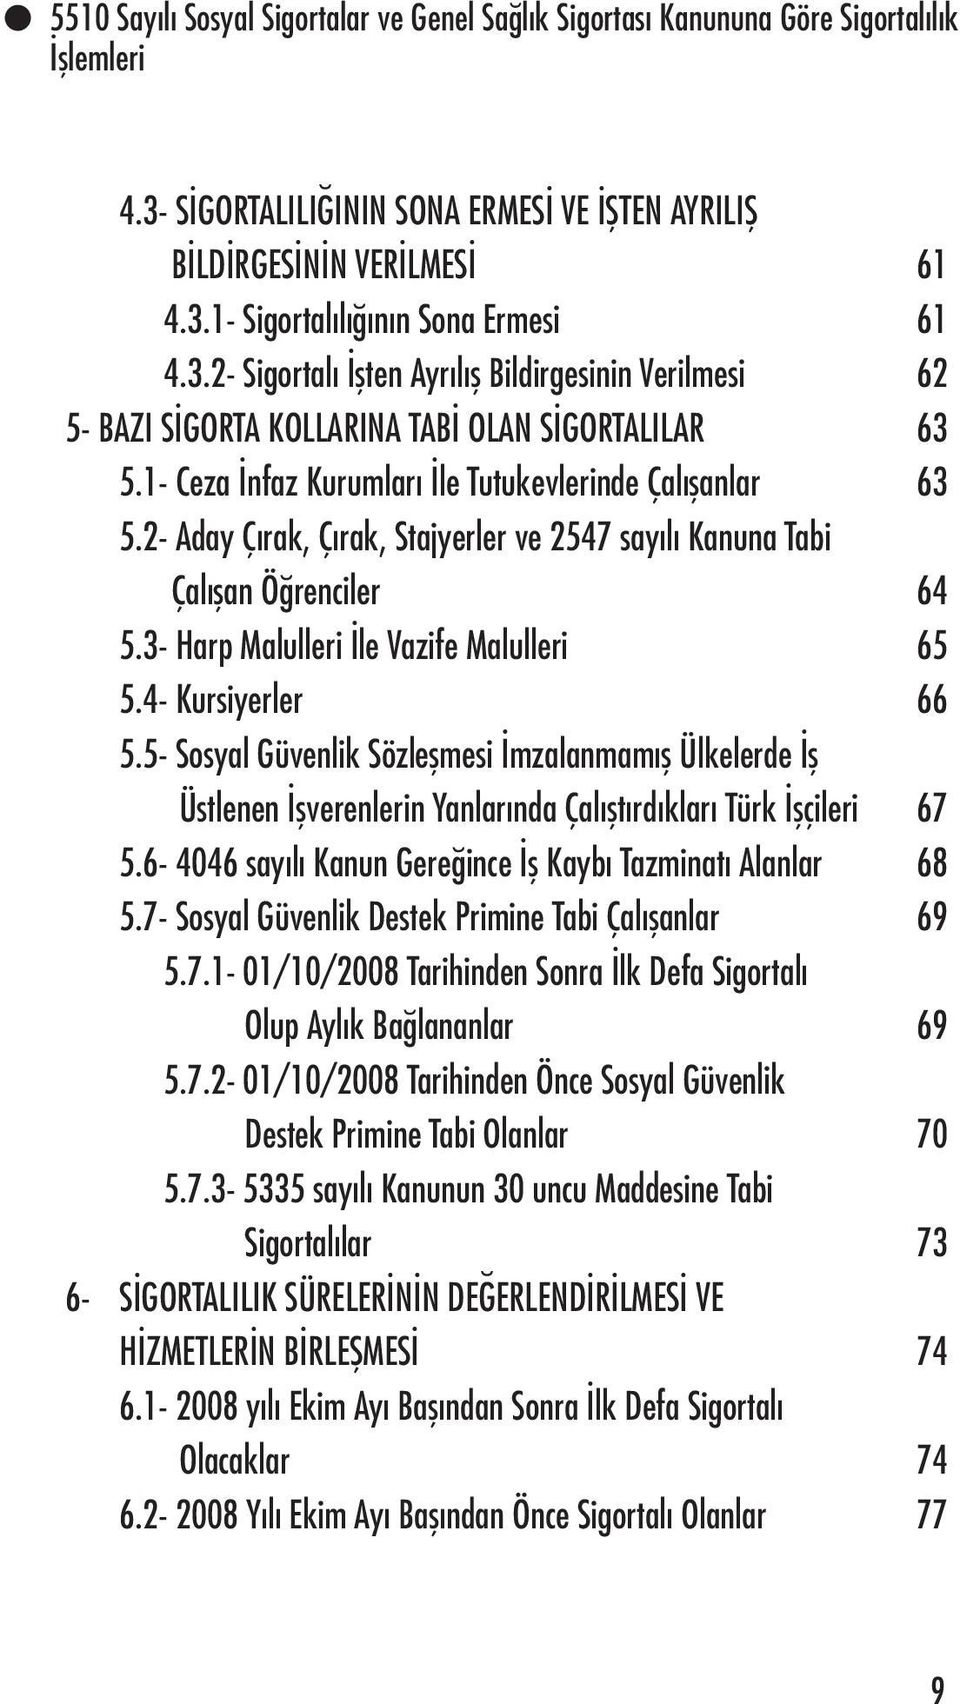 4- Kursiyerler 66 5.5- Sosyal Güvenlik Sözleşmesi İmzalanmamış Ülkelerde İş Üstlenen İşverenlerin Yanlarında Çalıştırdıkları Türk İşçileri 67 5.